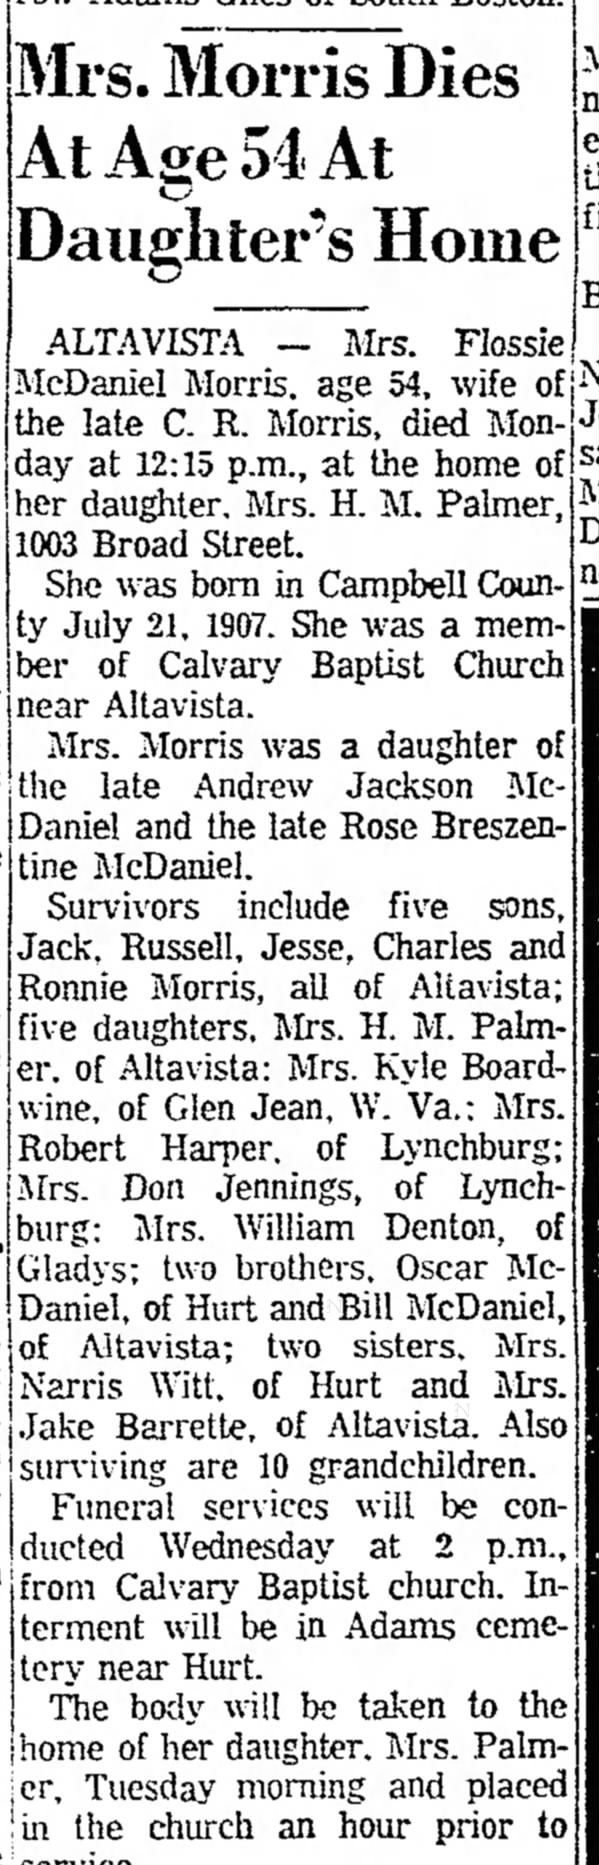 McDaniel, Flossie MORRIS obit 1962 do Andrew Jackson McD and Rose Breszentine.